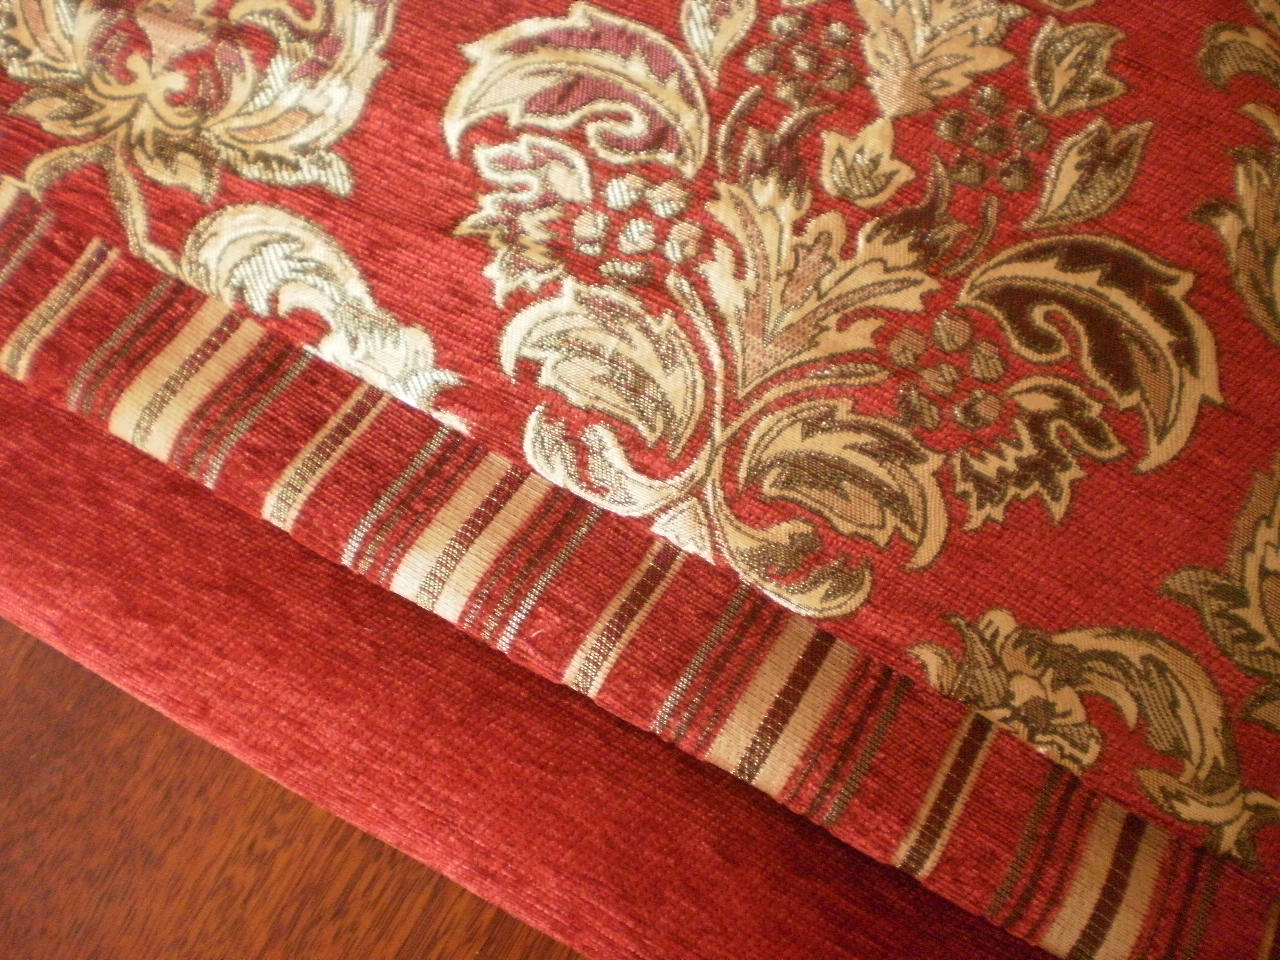 高档欧式沙发布料 雪尼尔沙发面料 定做沙发套沙发垫红色包邮折扣优惠信息